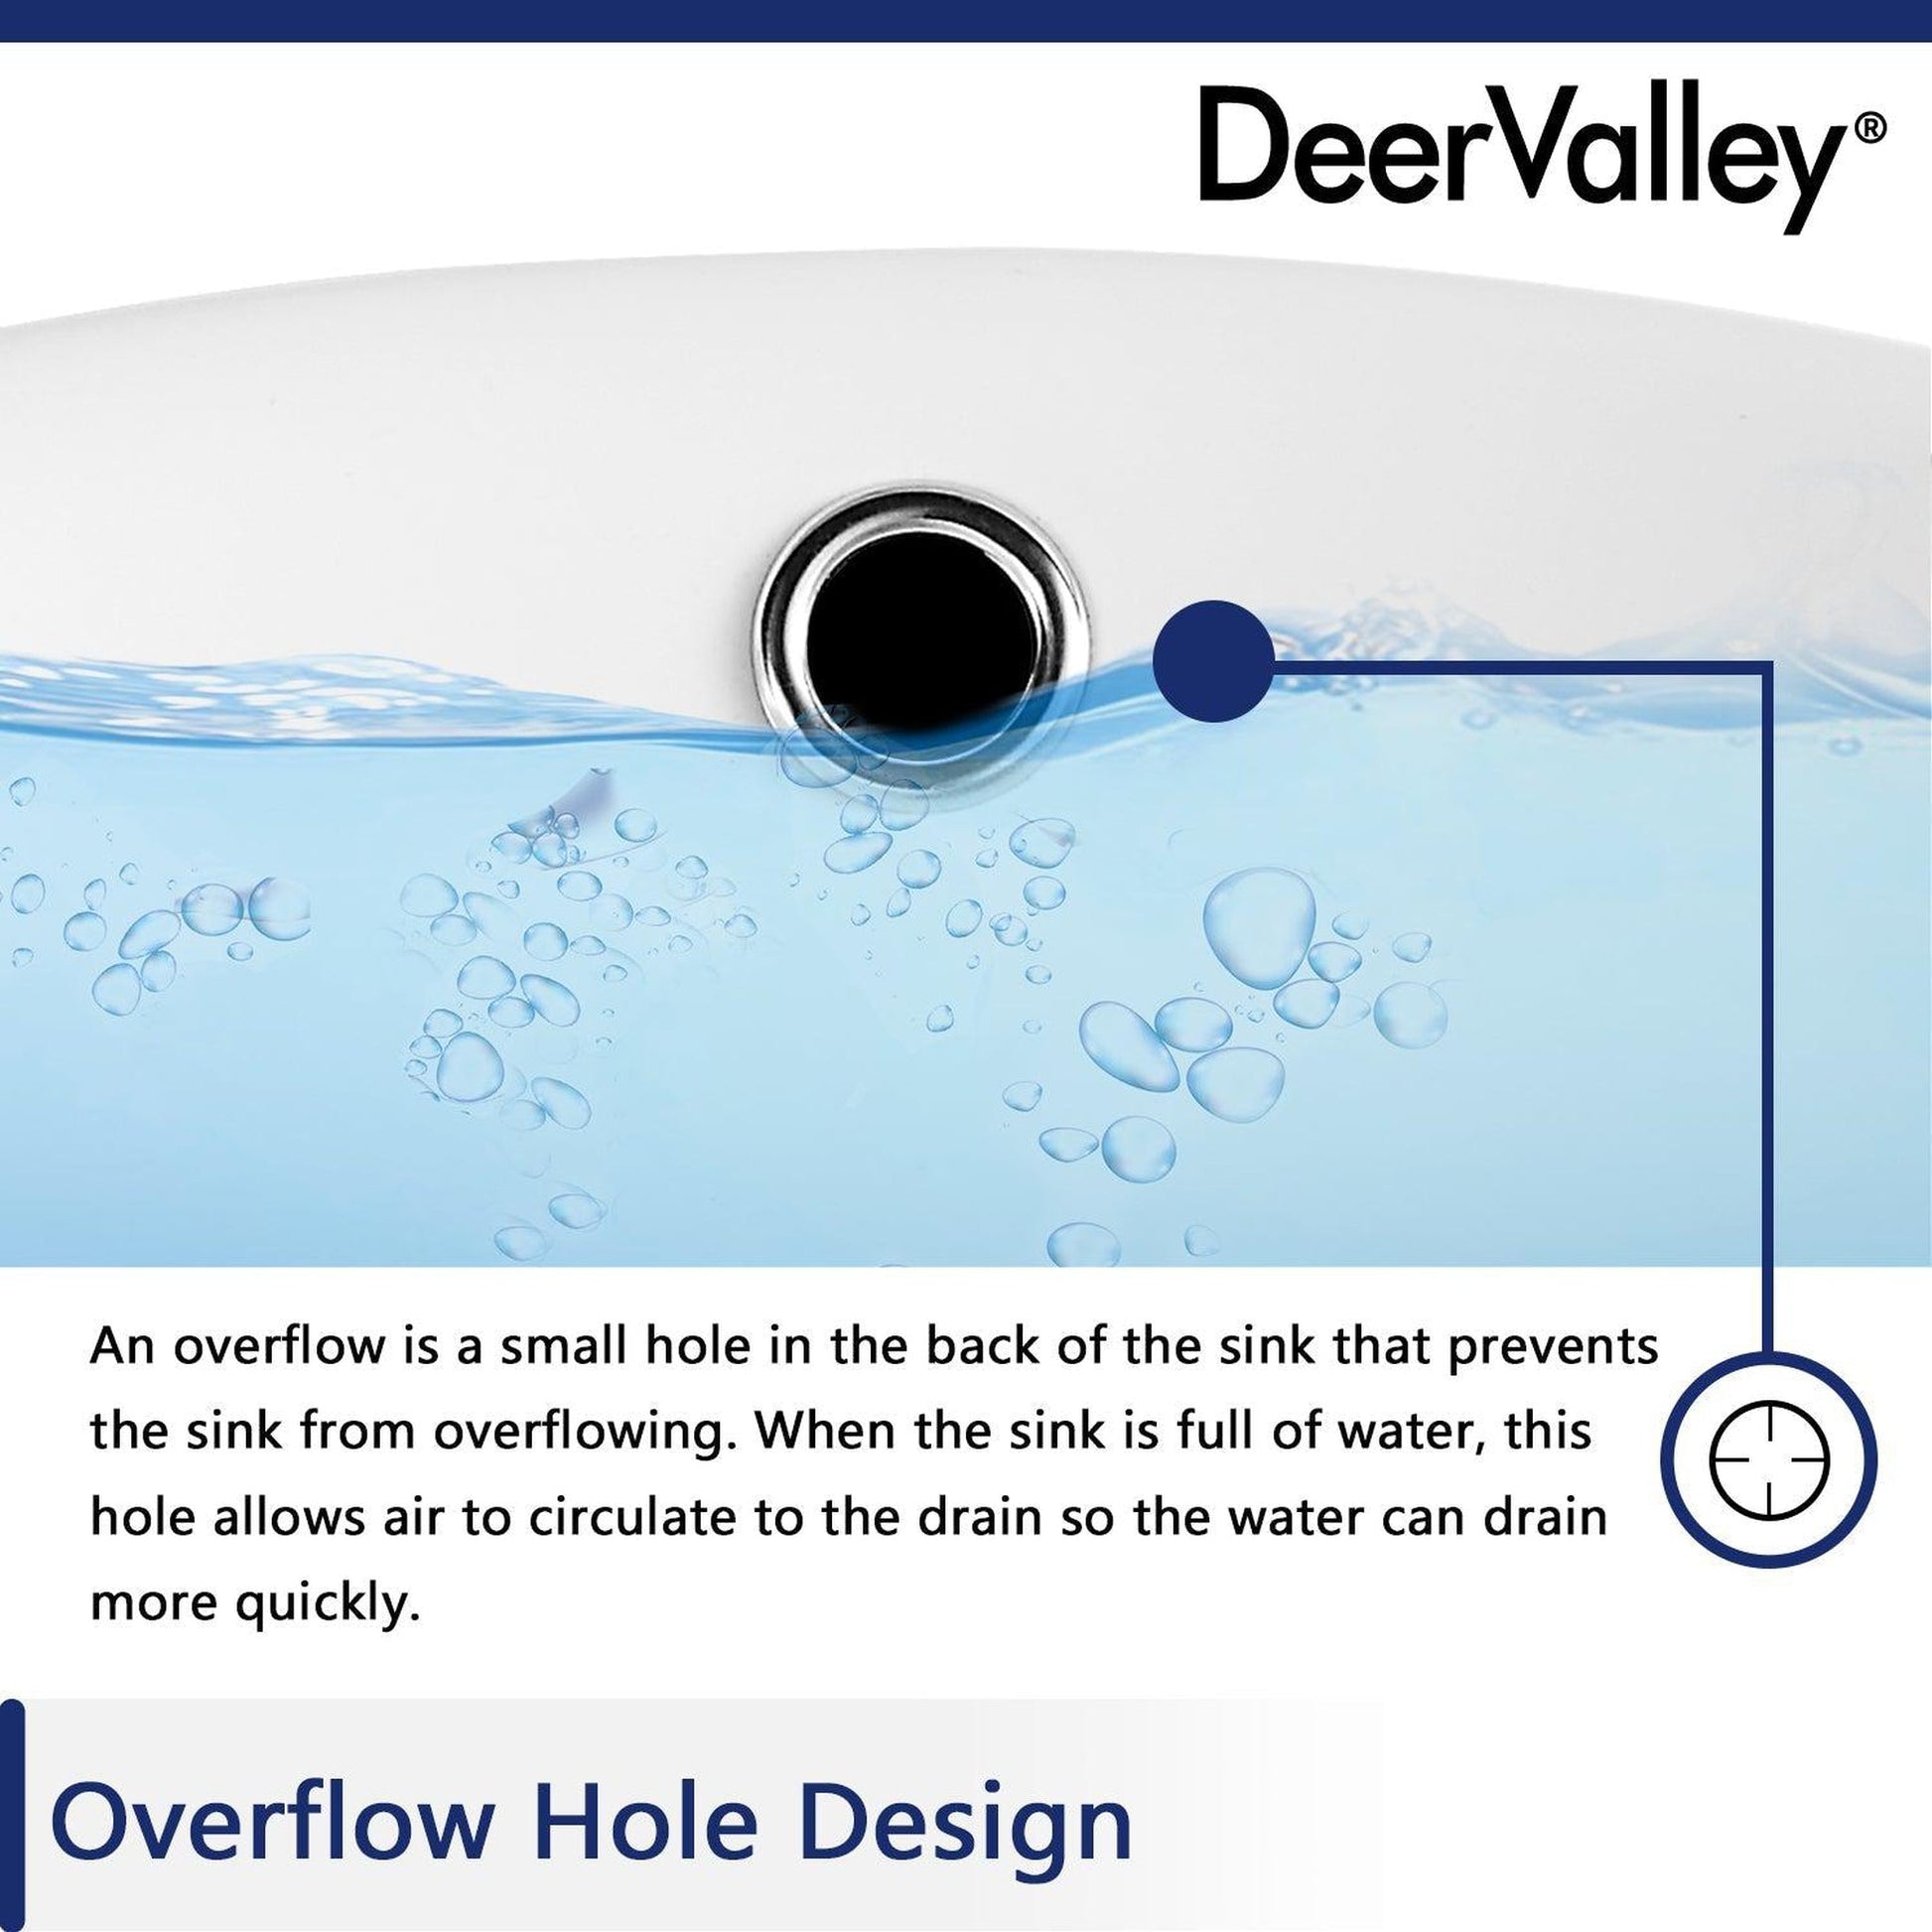 DeerValley Ursa 18" x 13" Rectangular White Undermount Bathroom Sink With Overflow Hole